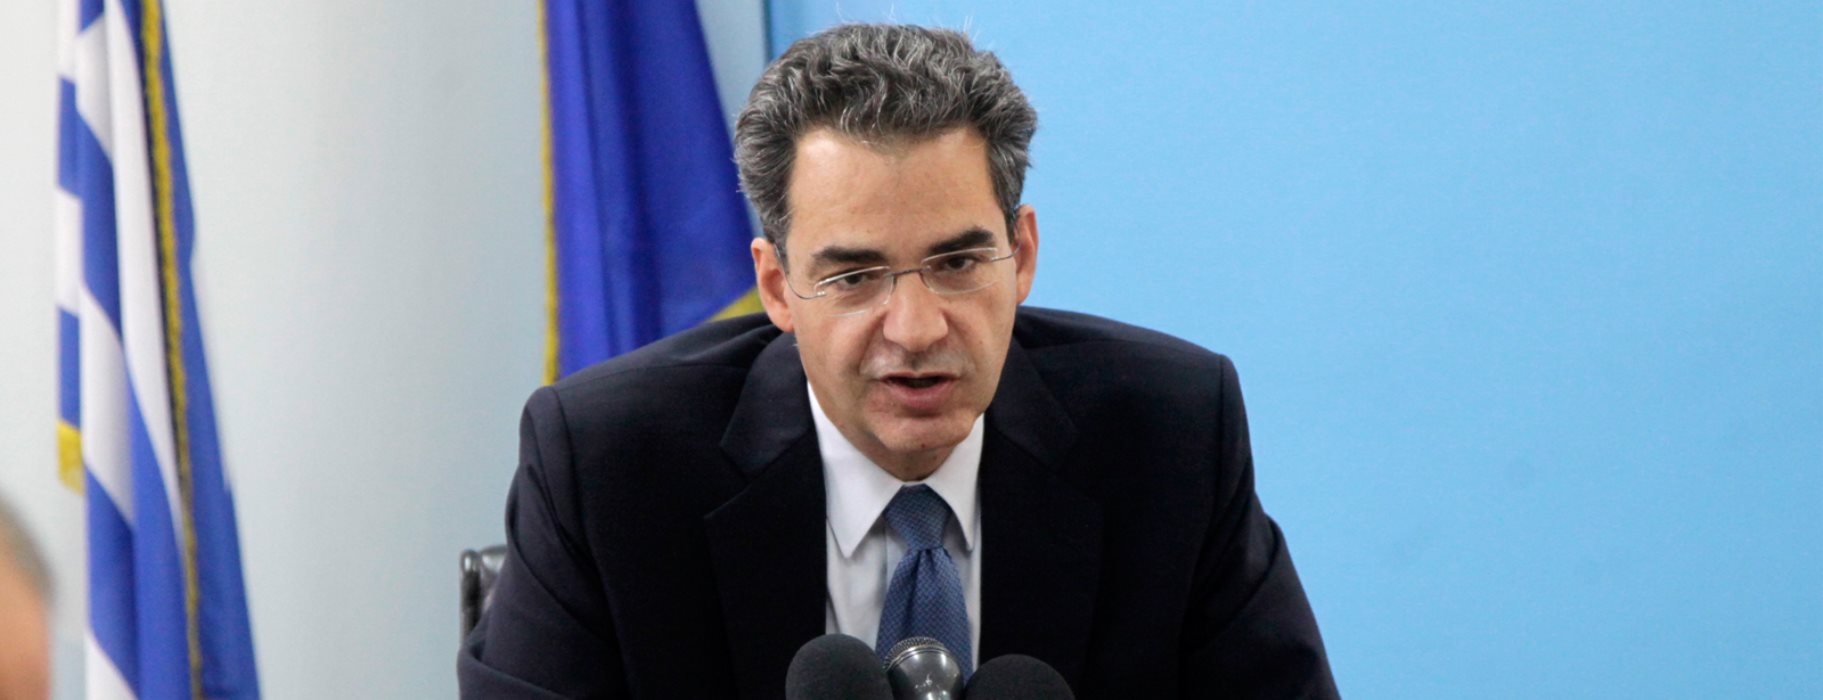 Α.Συρίγος στο pronews.gr: «Η πολιτική μας πλέον στο μεταναστευτικό είναι πάση θυσία αποτροπή εισόδου»